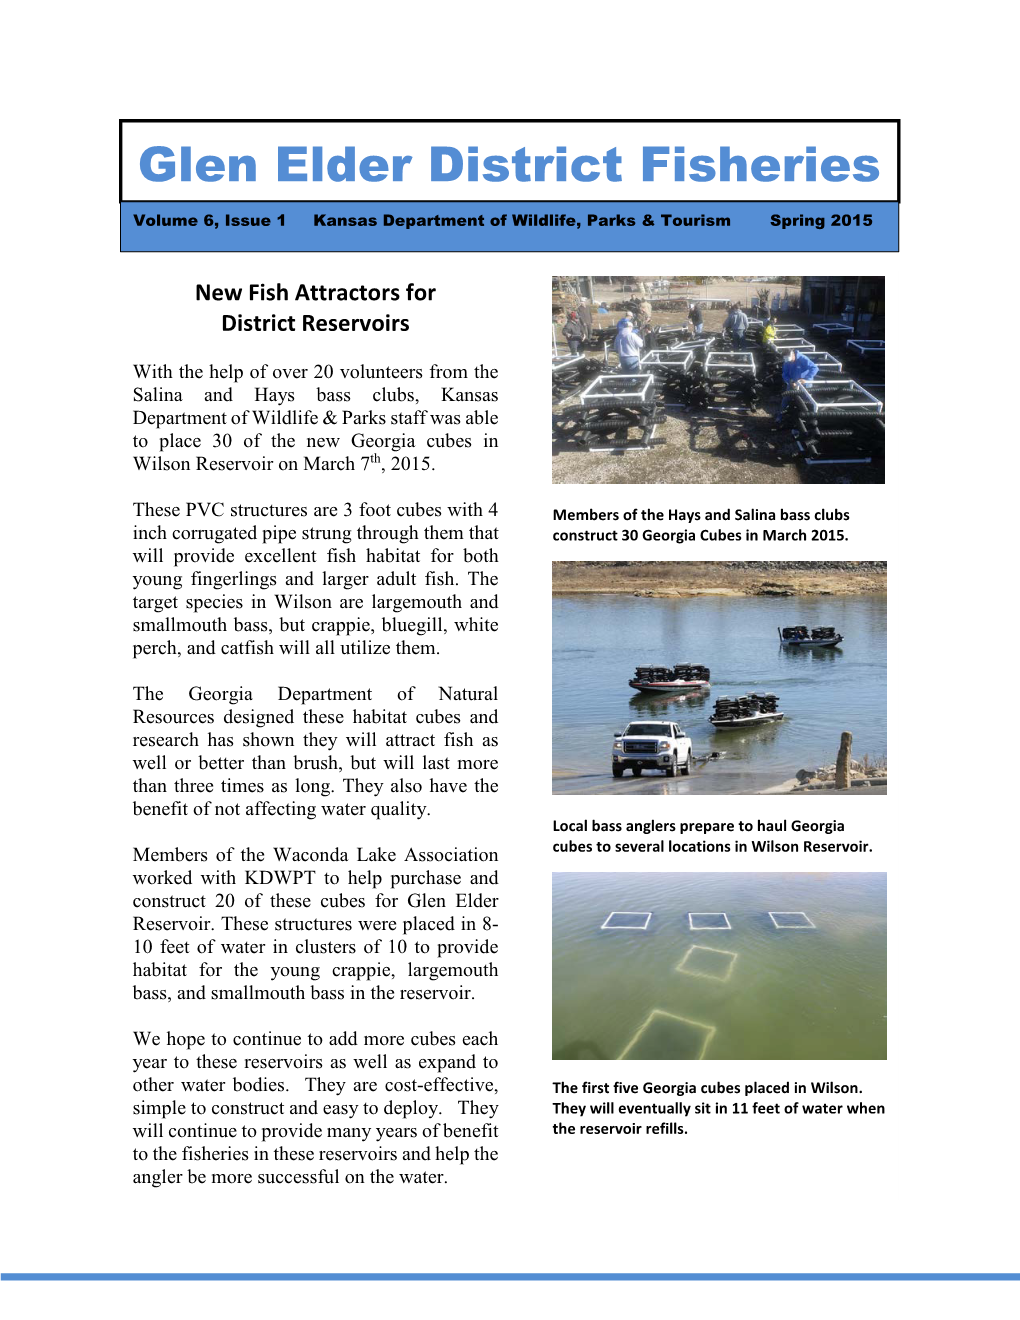 Glen Elder Fishing District Newsletter 4-10-2015